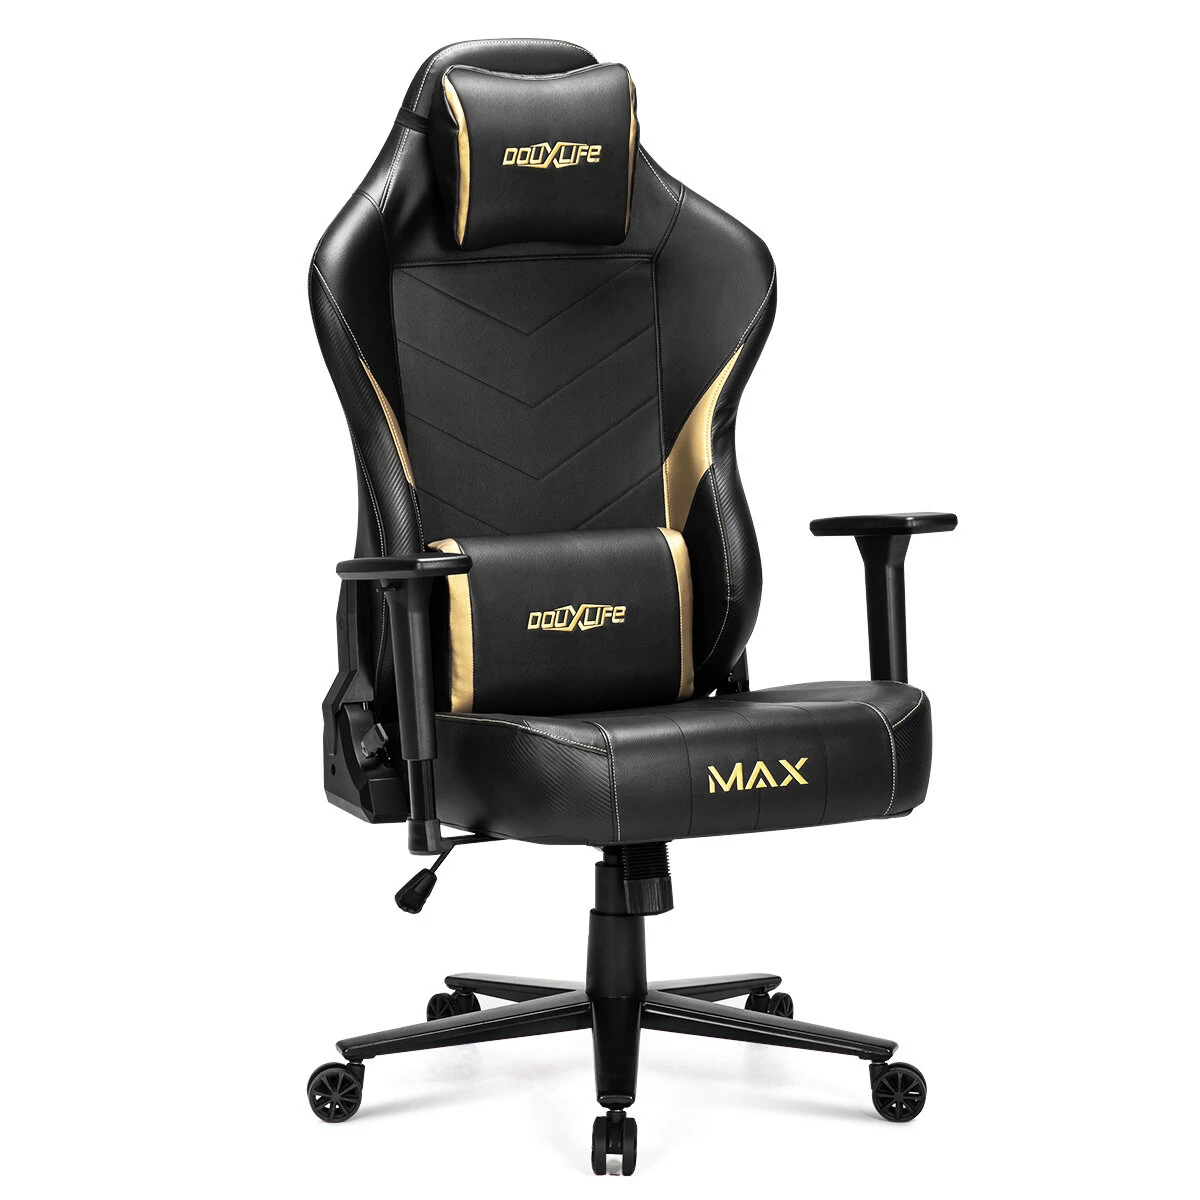 Στα 207,61€ από αποθήκη Τσεχίας | Douxlife® Max Gaming Chair Adults Gamer Ergonomic Game Reclining High Back Support Racer Leather Office Computer Racing Chairs 2022